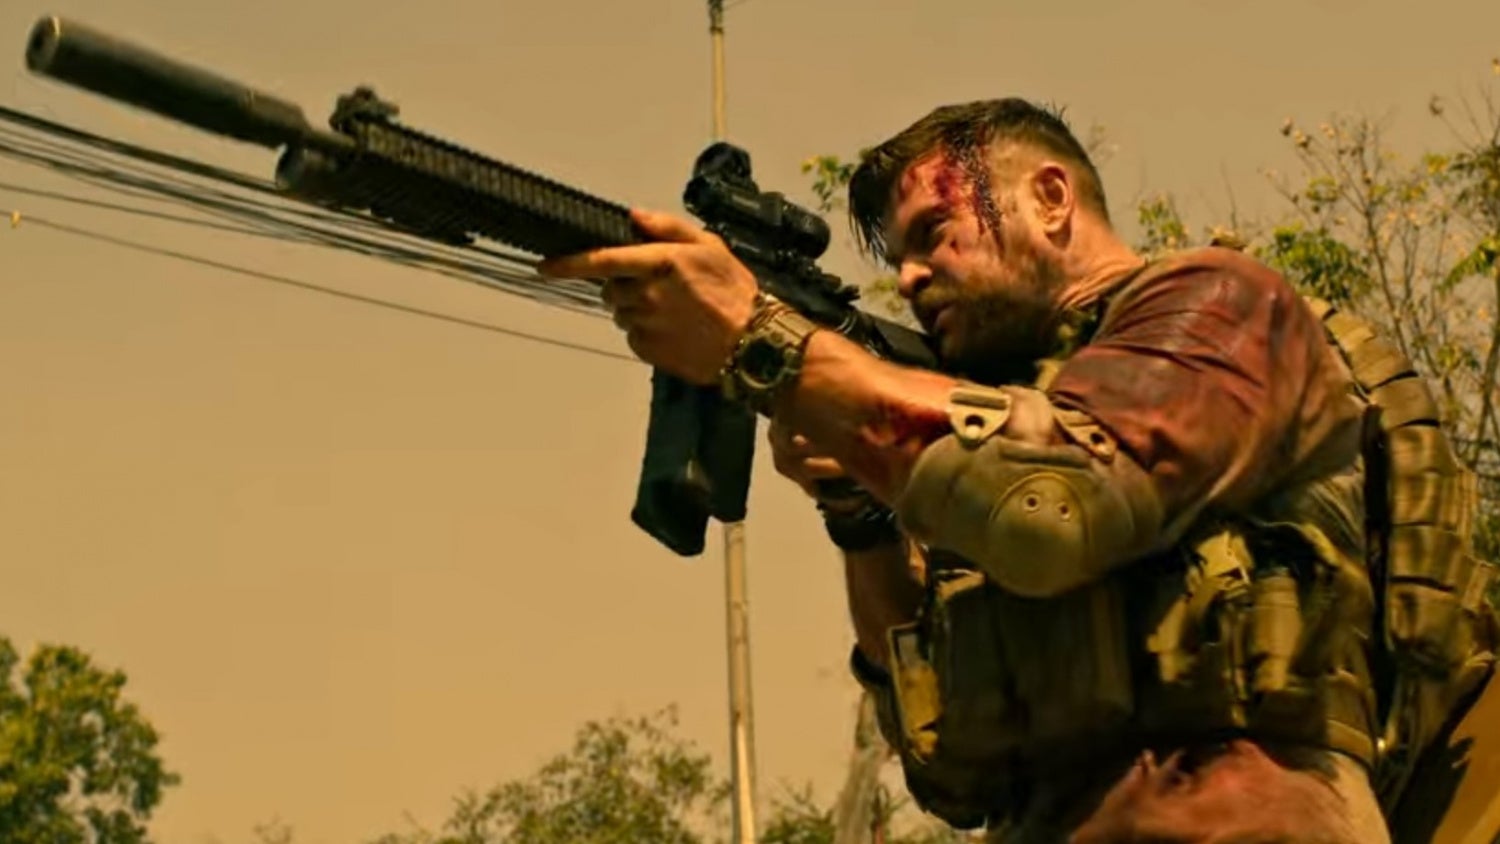 Daniel Defense rifle in the final scene